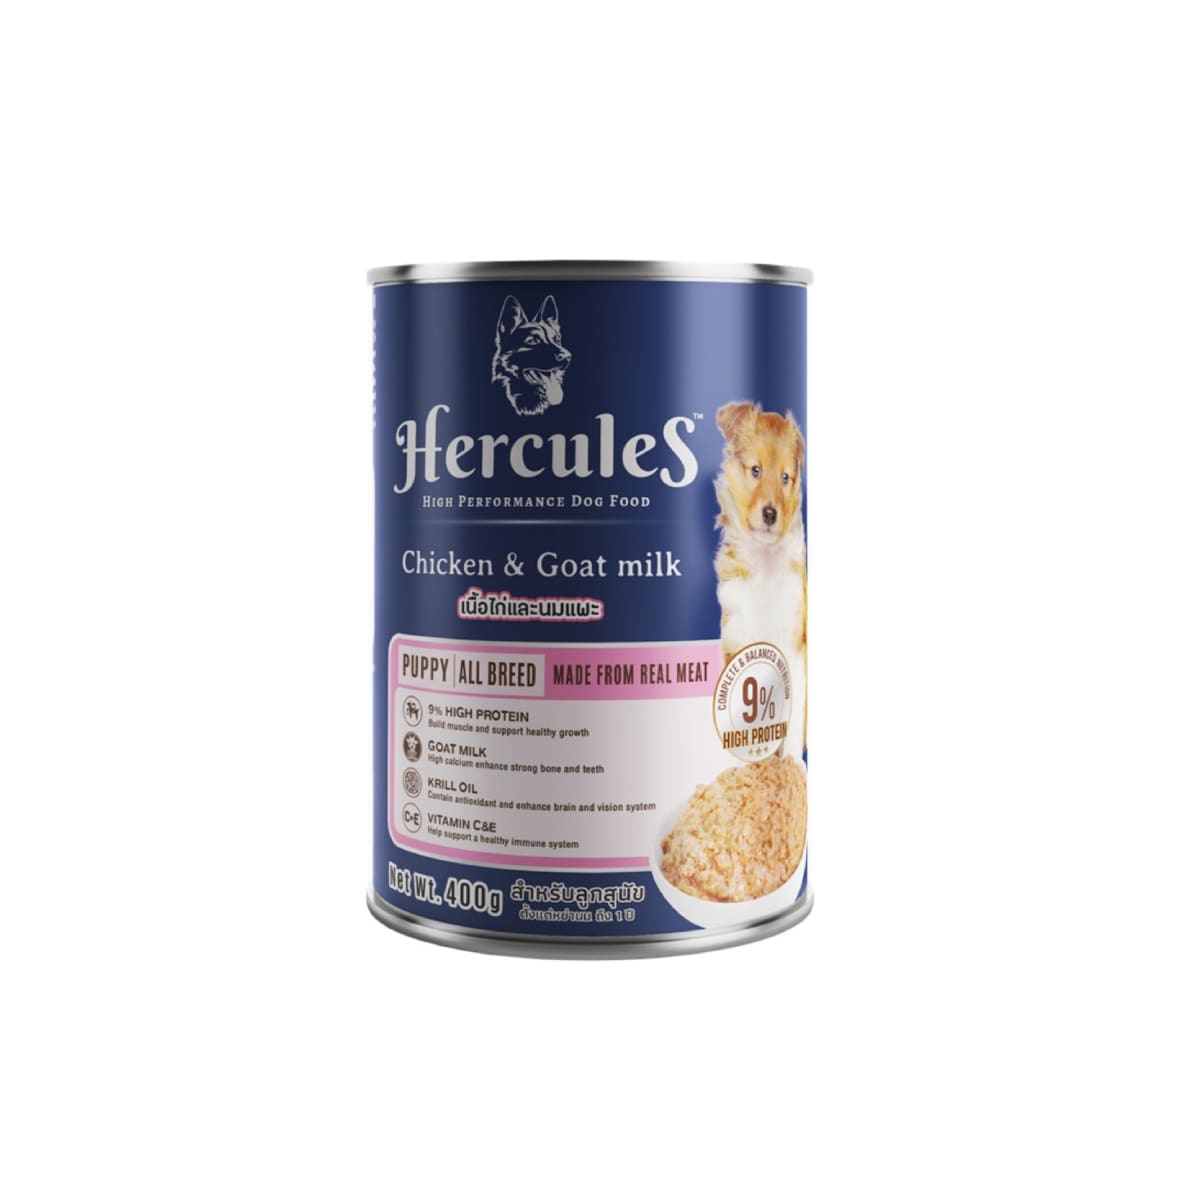 Hercules เฮอร์คิวลิส อาหารเปียกกระป๋อง รสเนื้อไก่และนมแพะ สำหรับลูกสุนัข 400 g 400 g